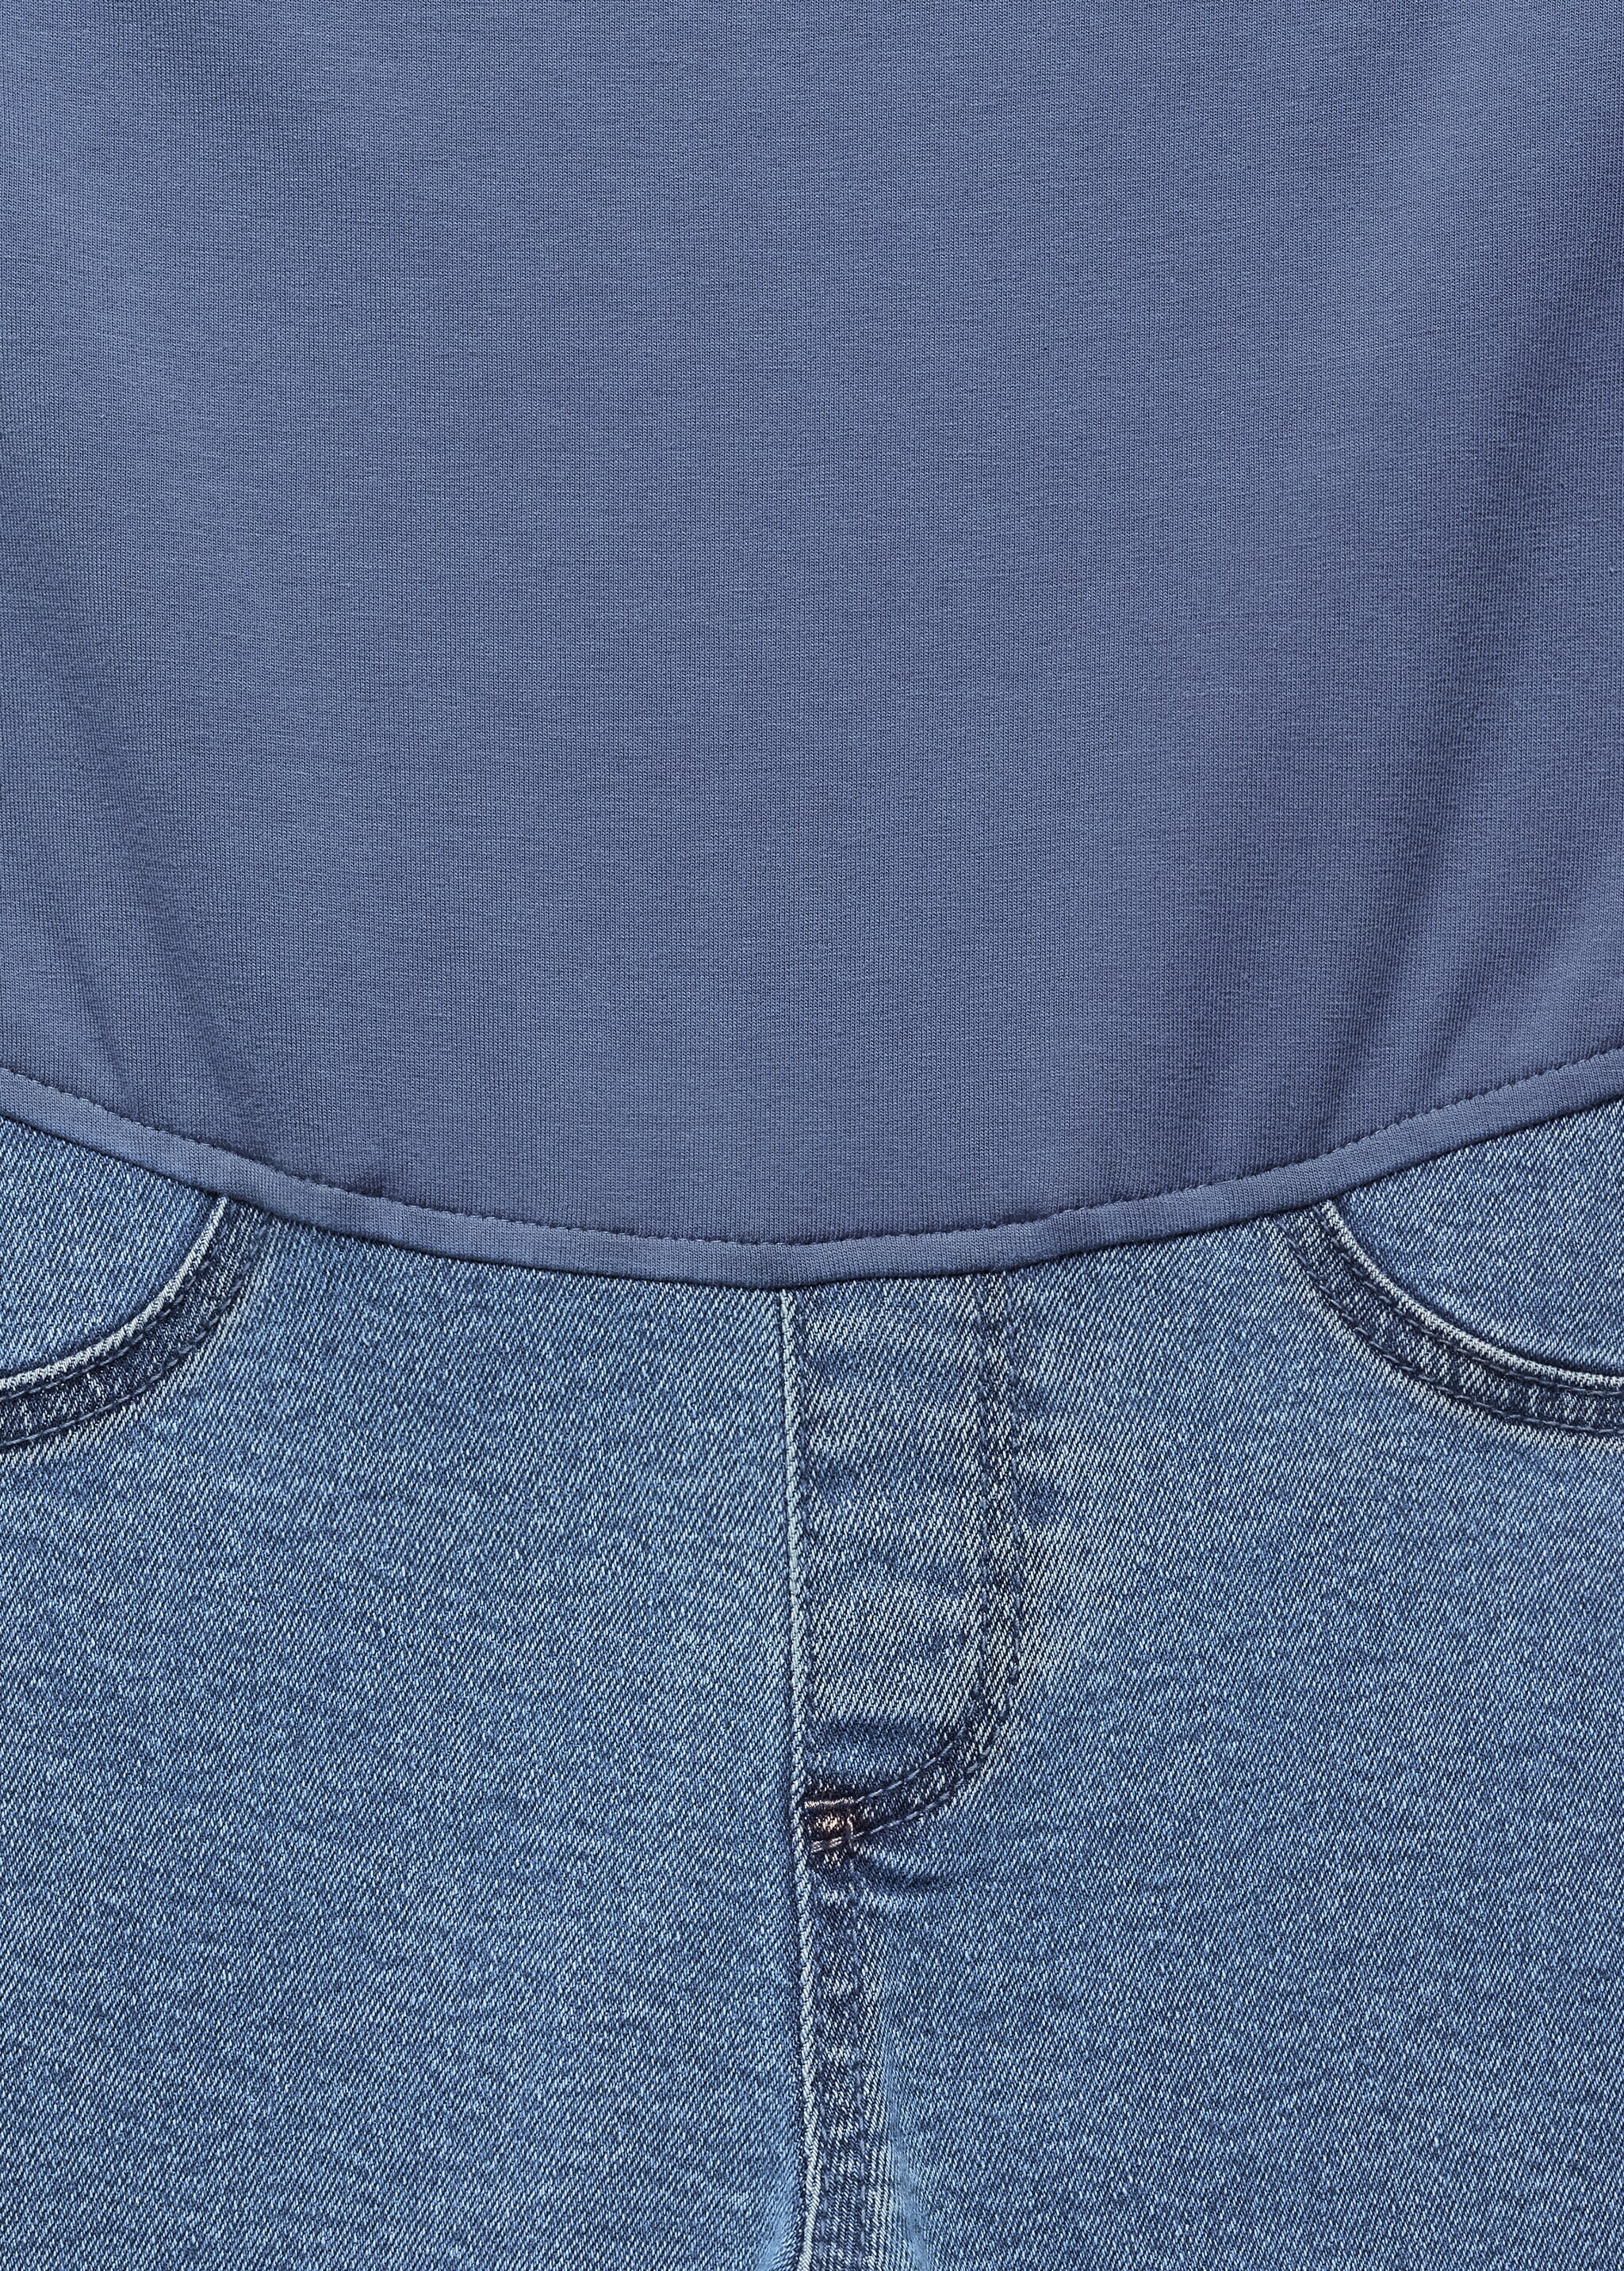 Укороченные джинсы flare для будущей мамы - Деталь изделия 8